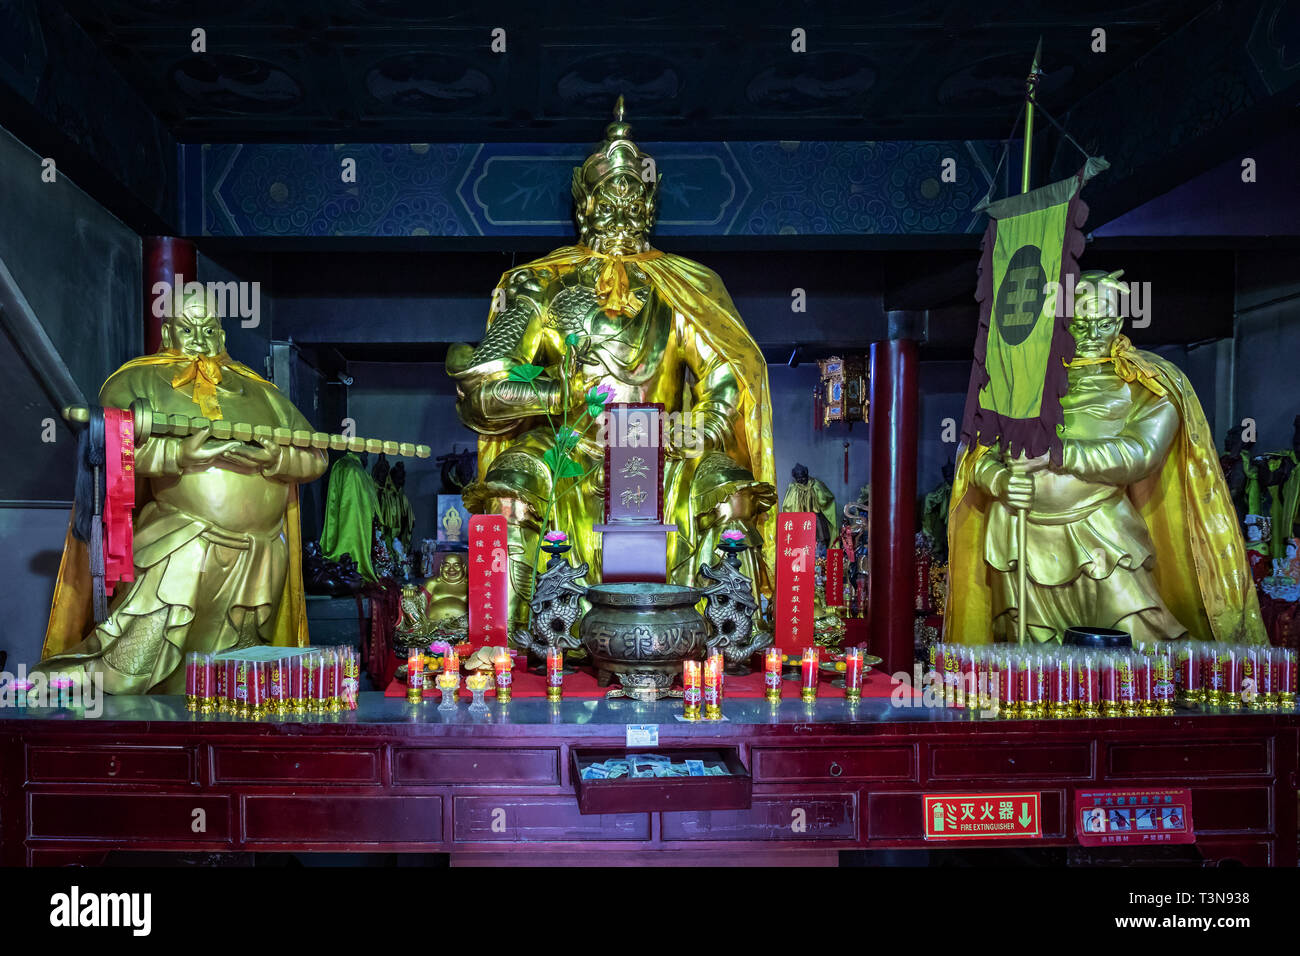 Chinese temple statues, Thousand Buddha Mountain, Jinan, Shandong province, China Stock Photo